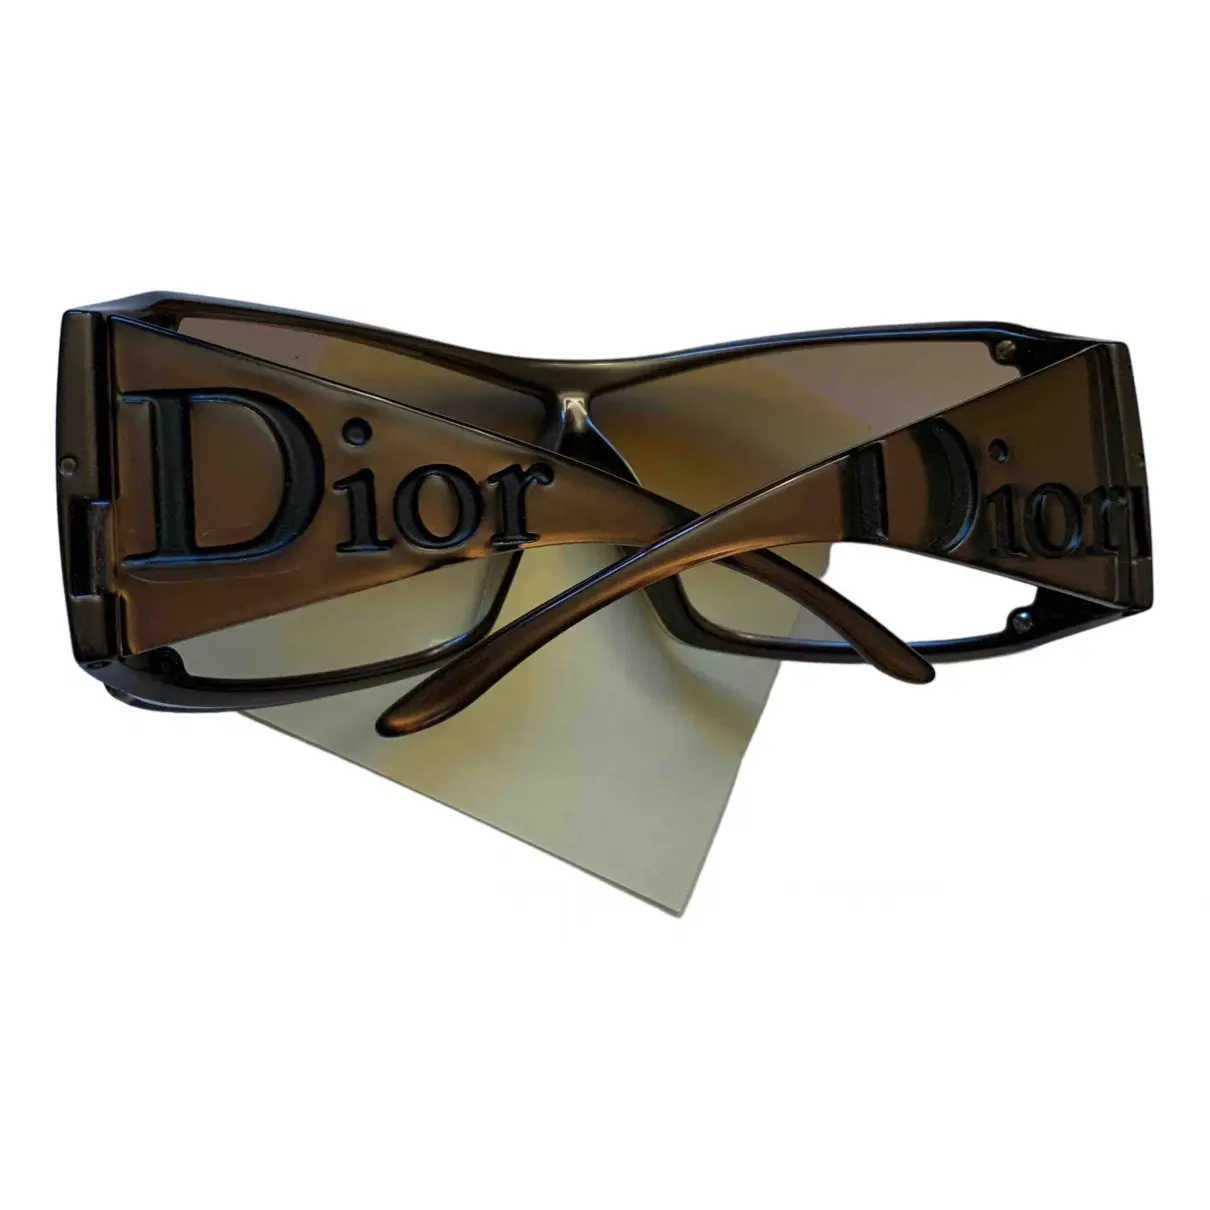 Buy Dior Goggle glasses online - Vintage